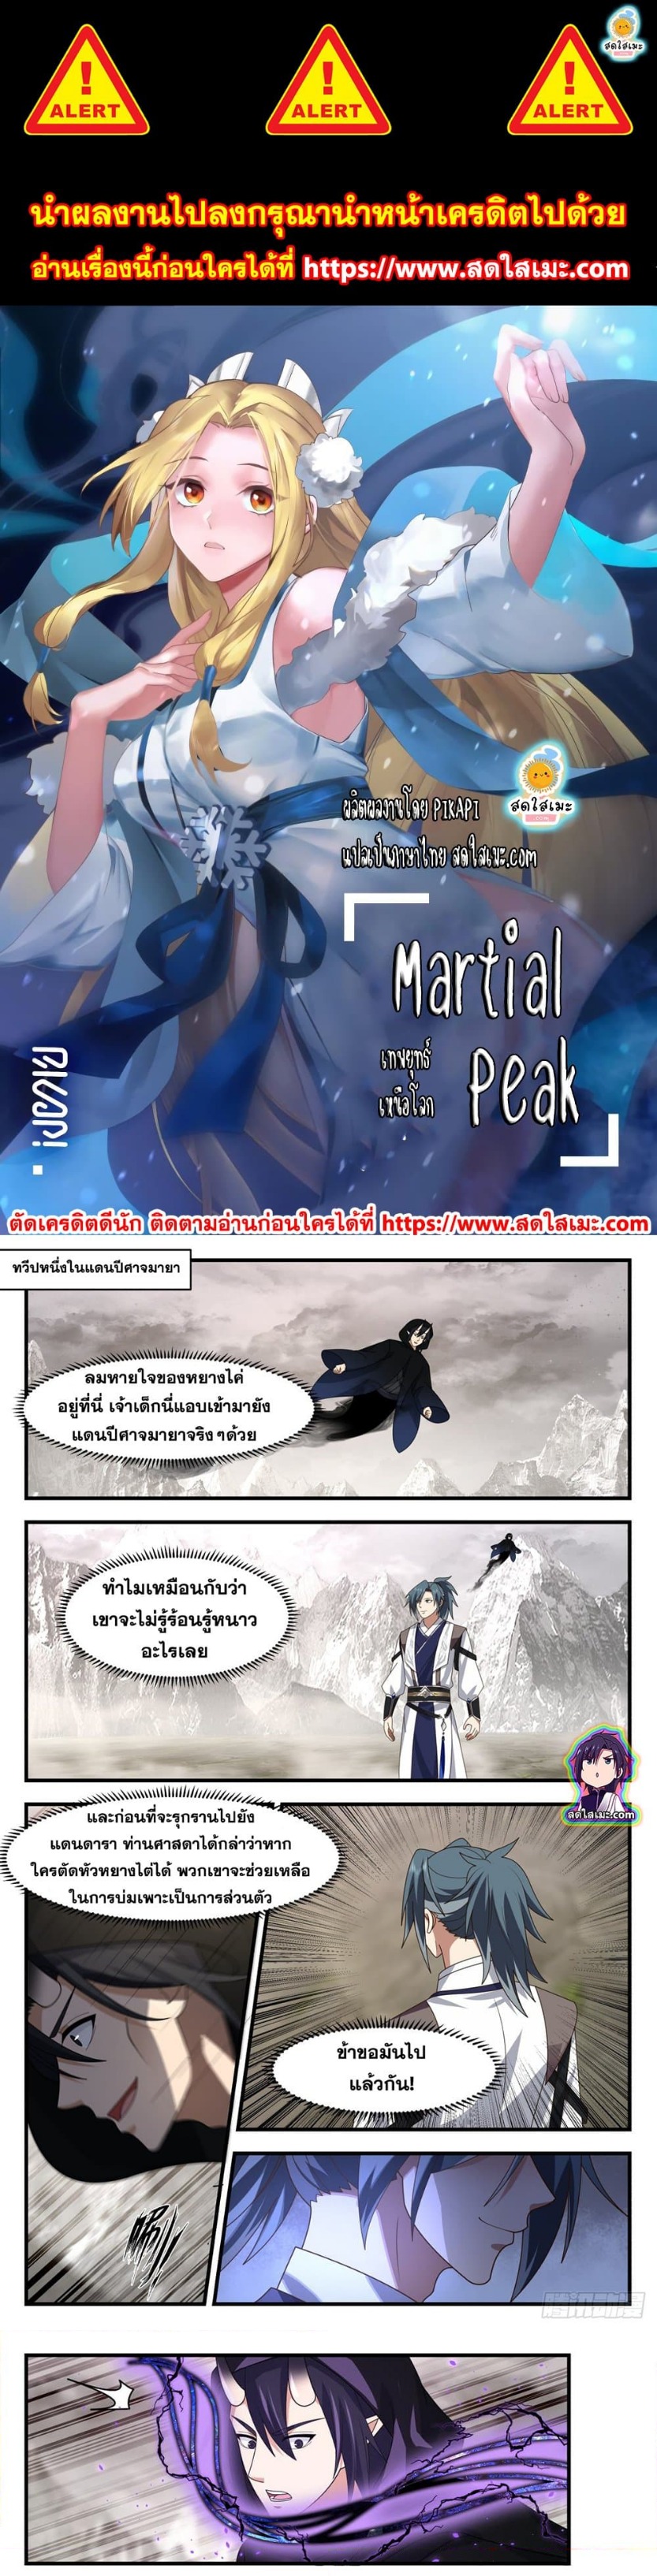 Martial Peak2517 (1)